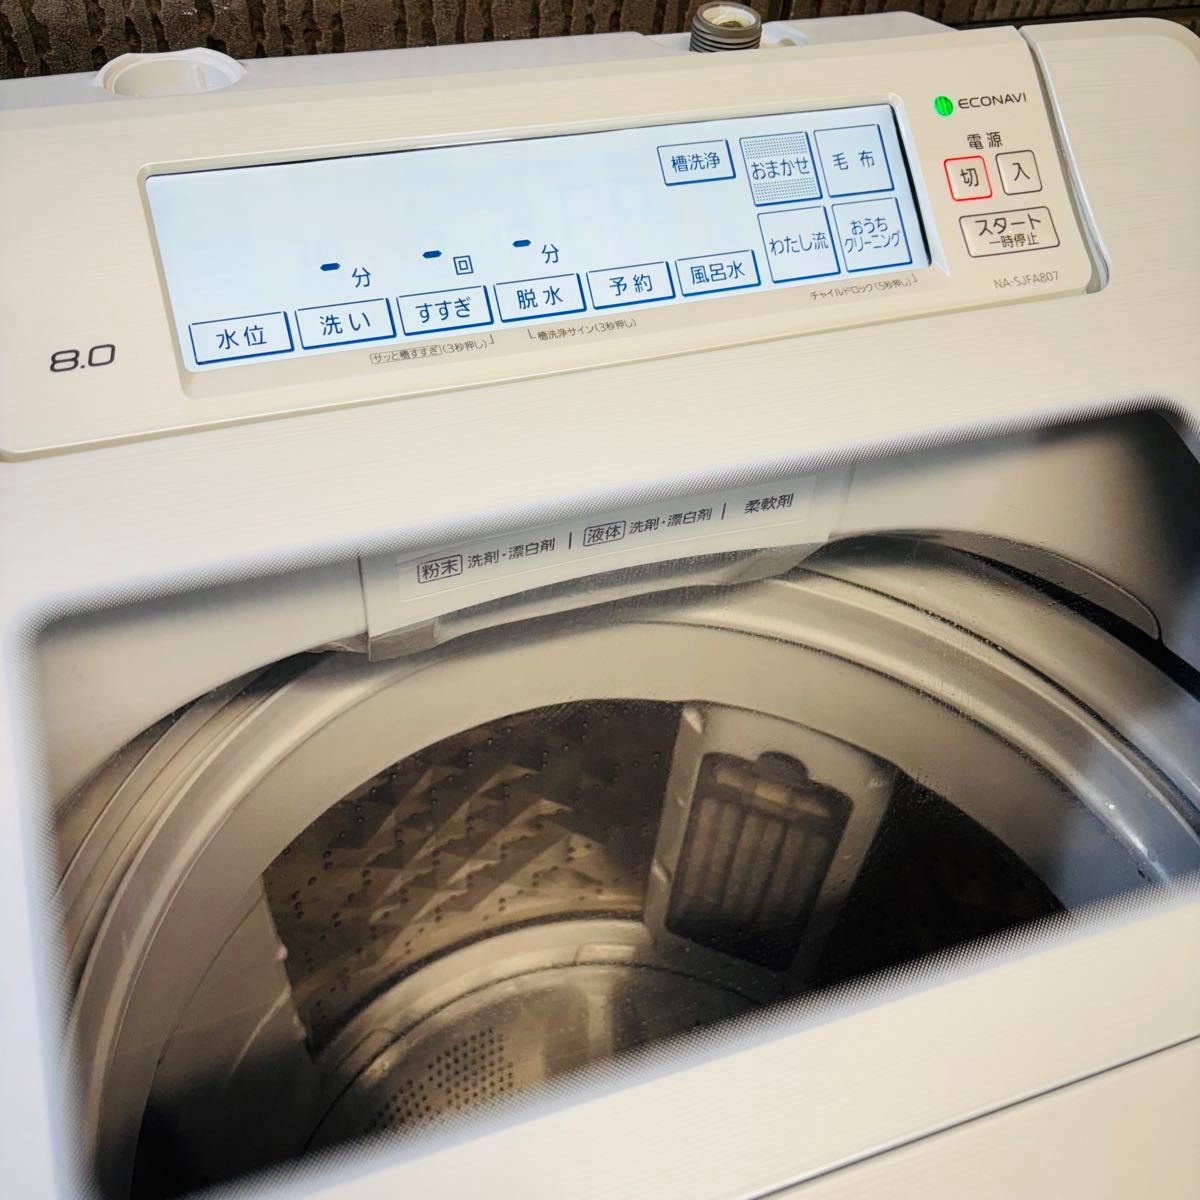 2020年製 8.0kg 洗濯機 大容量 Panasonic【地域限定配送無料】